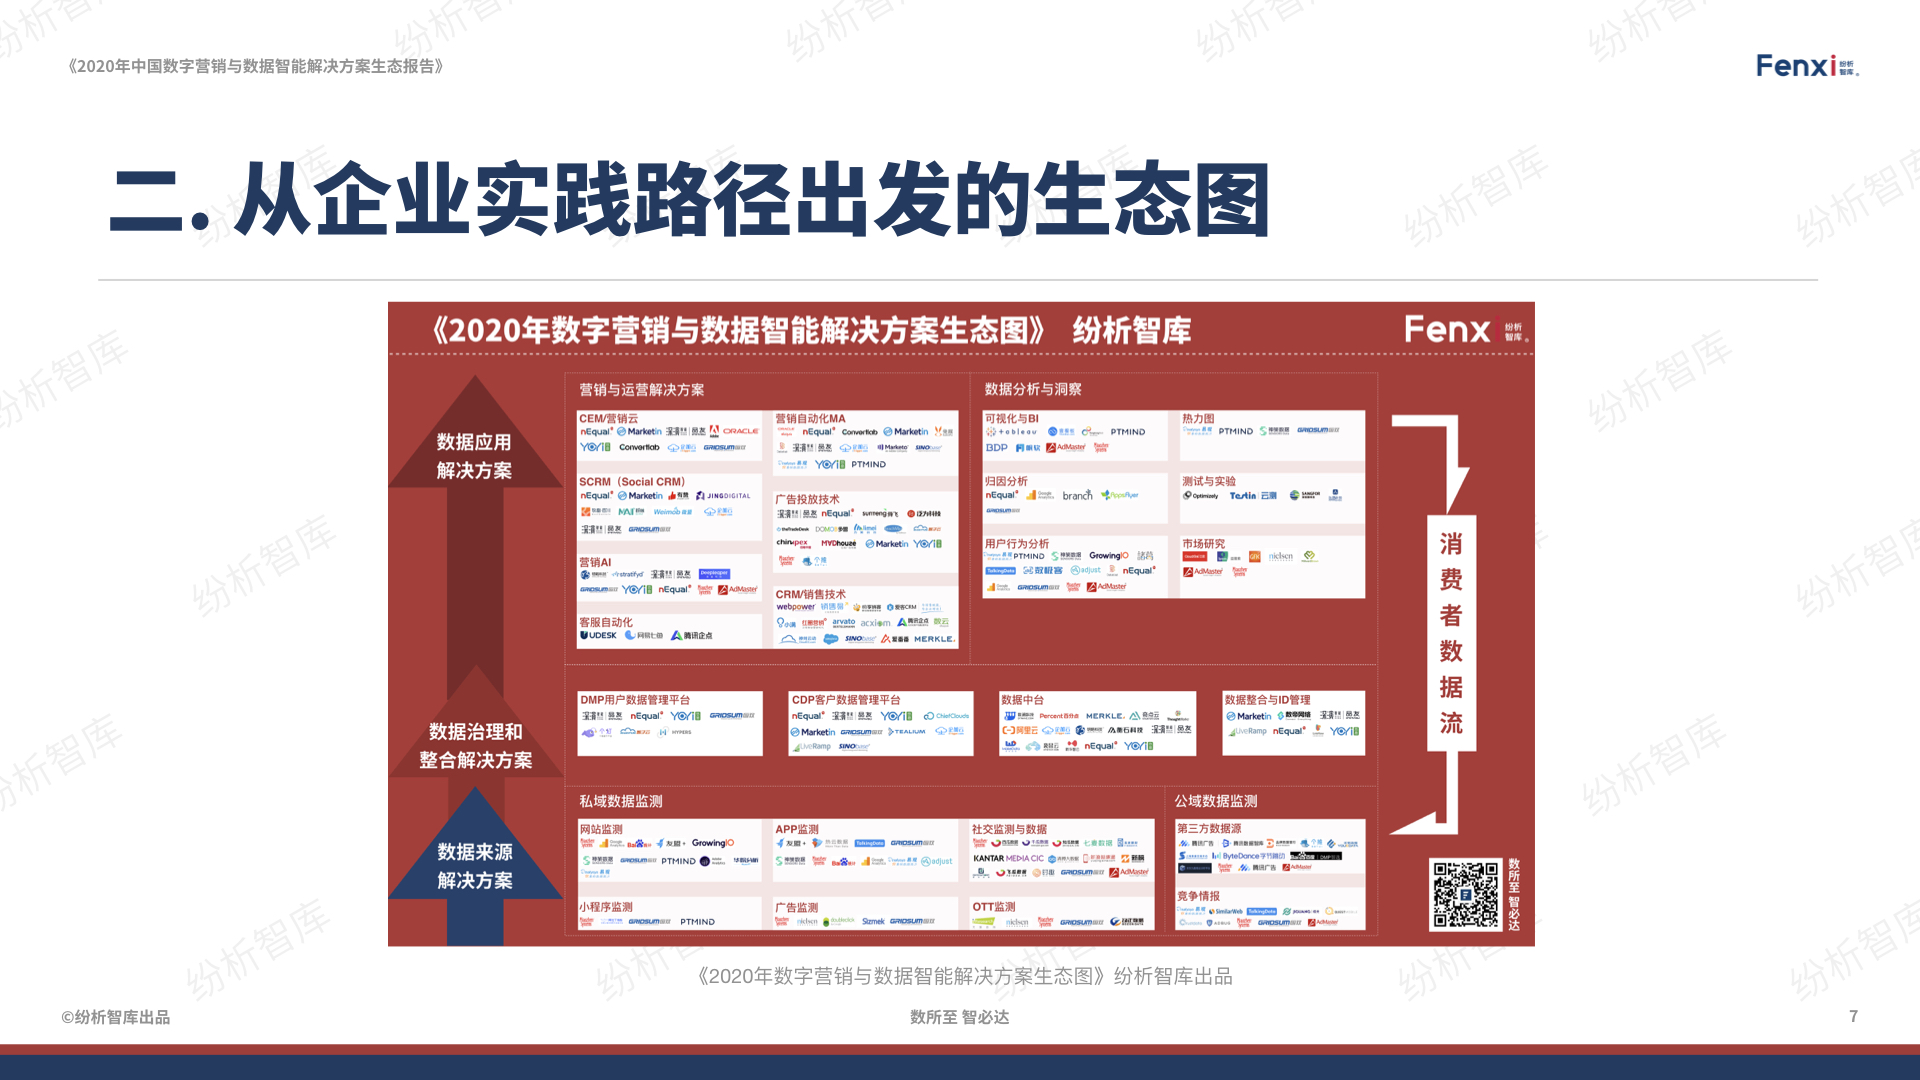 【V8】《2020年中国数字营销与数据智能解决方案生态图报告》0106.007.jpeg